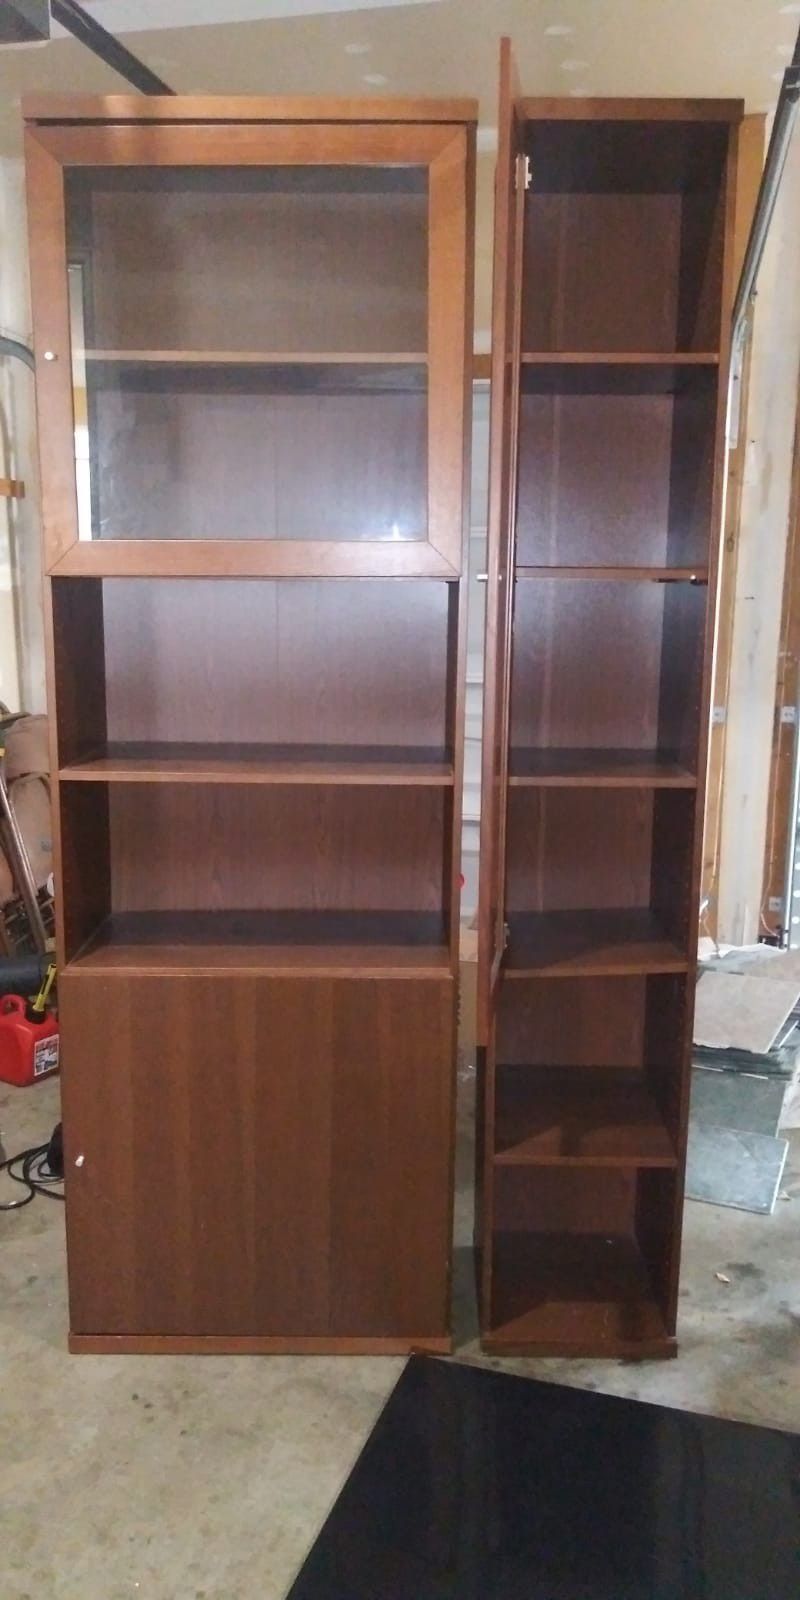 2 bookshelves